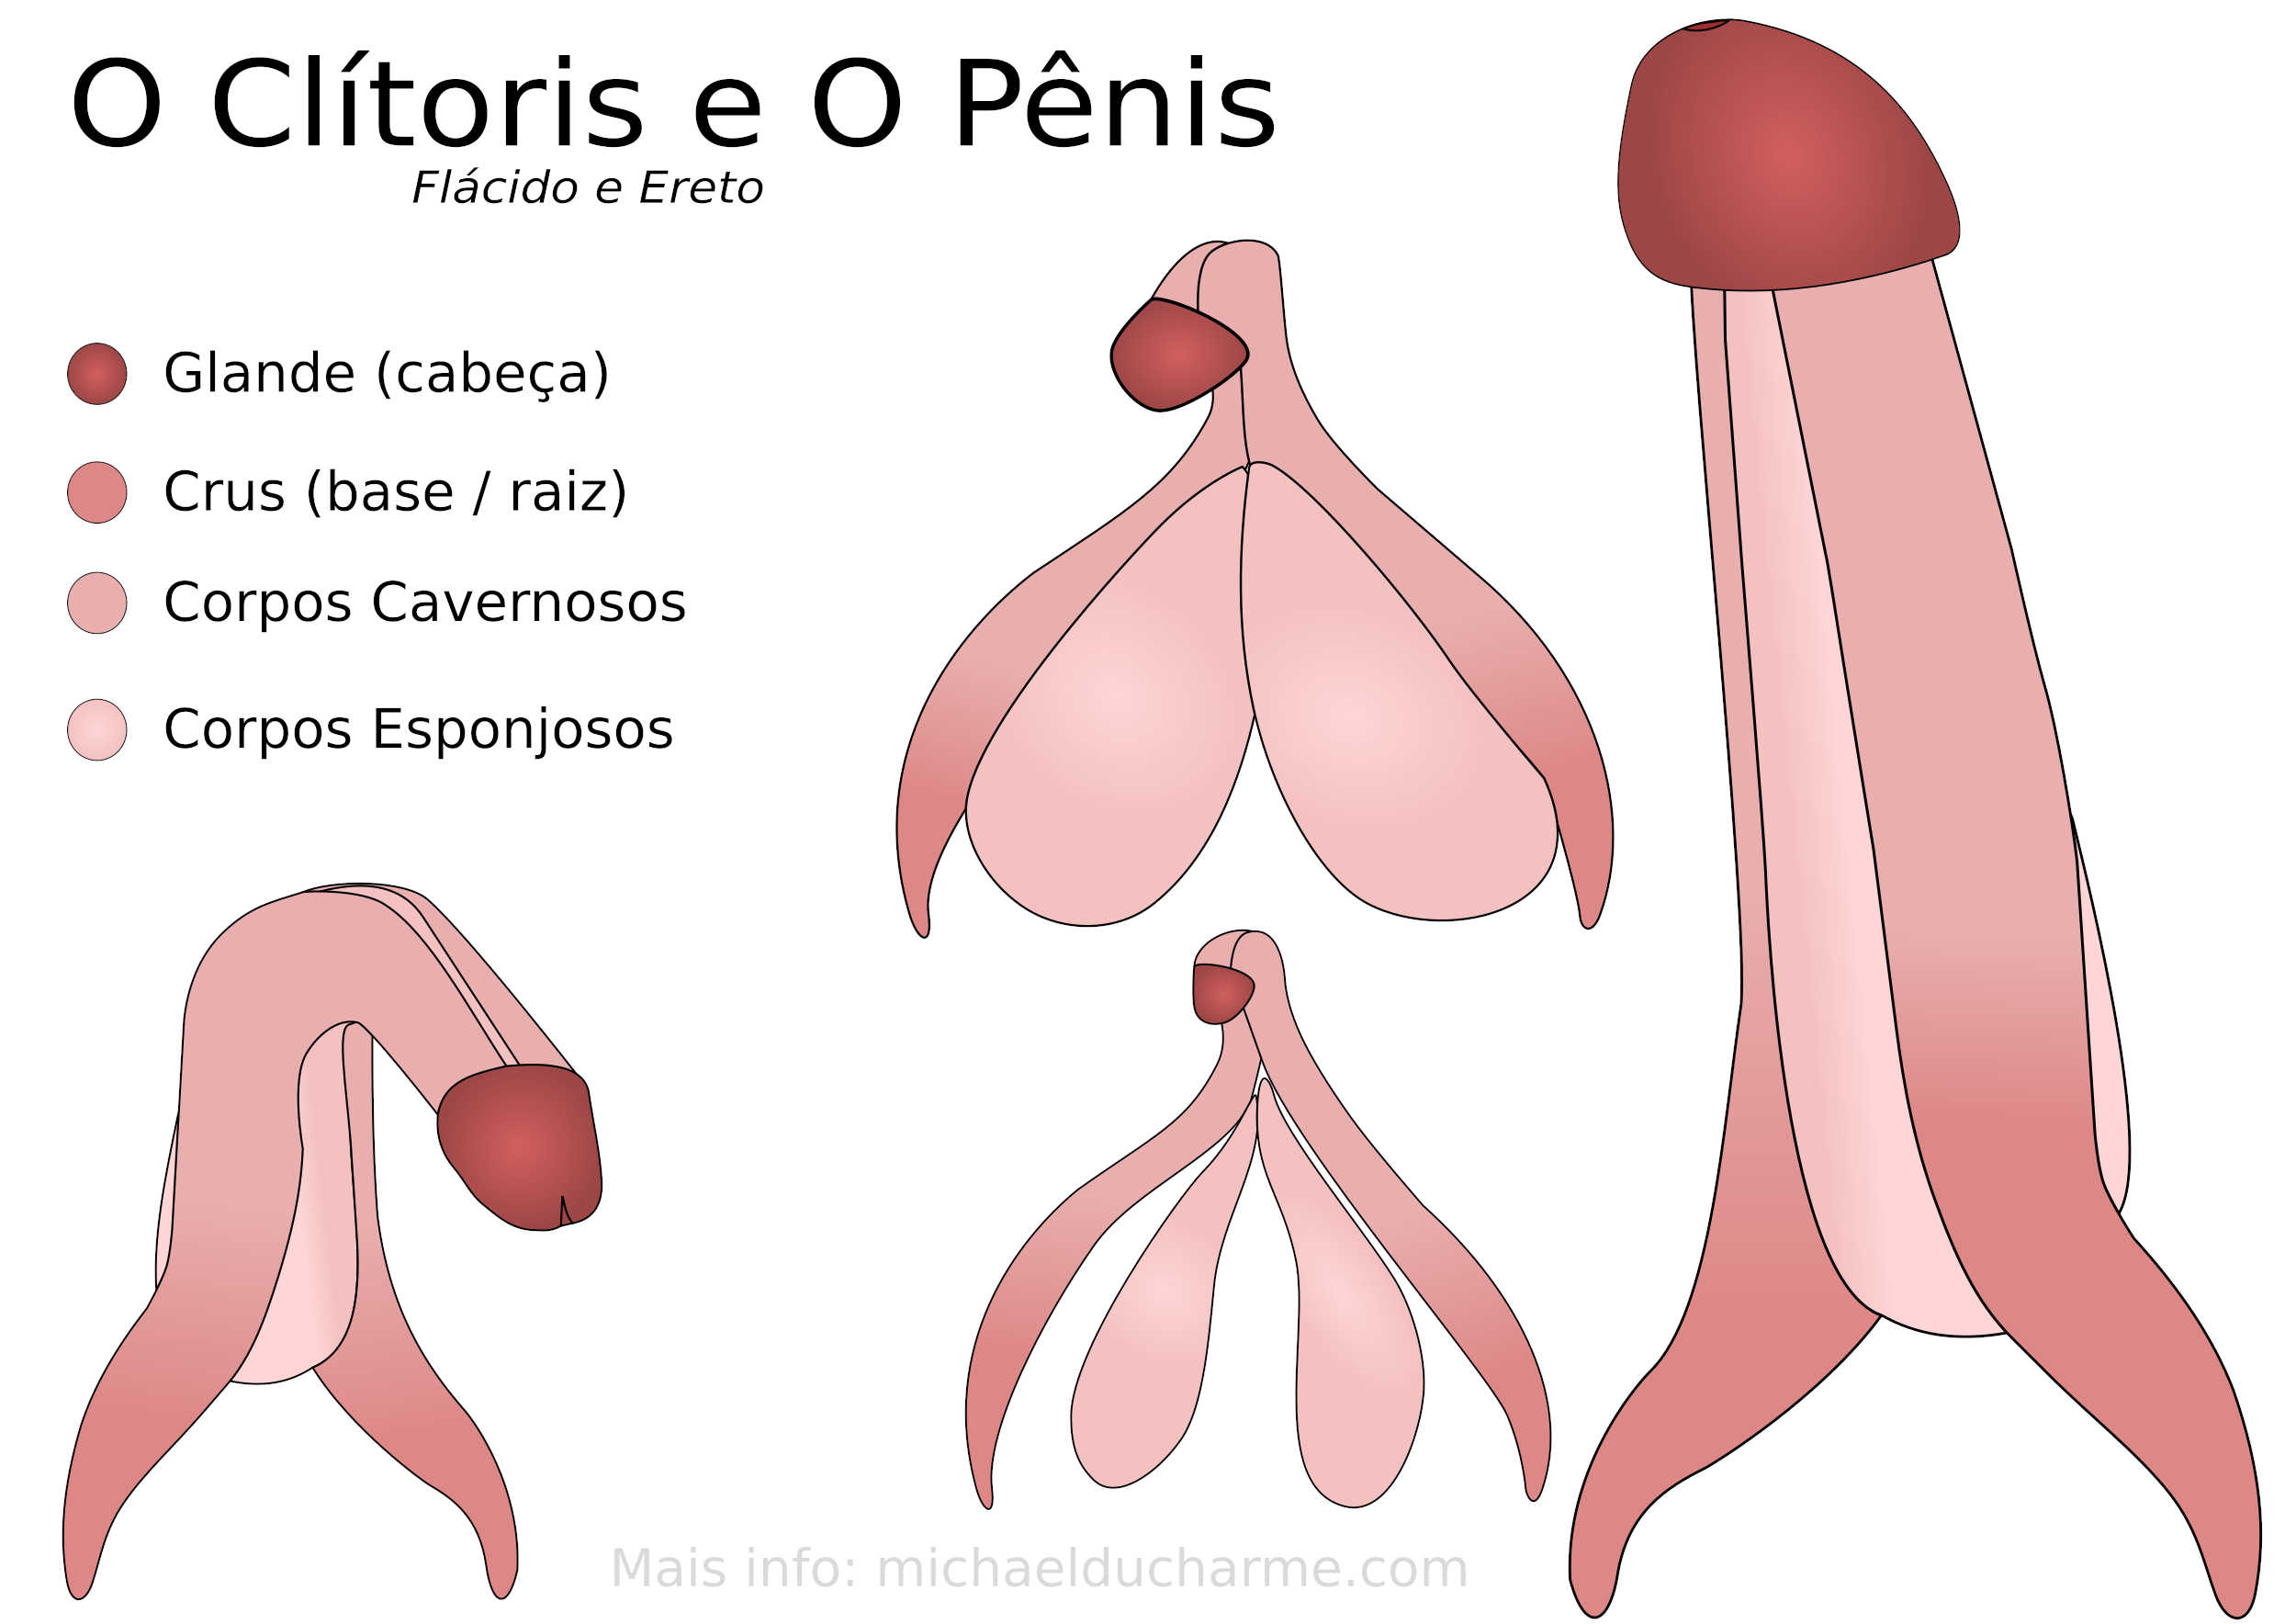 O Clitoris e o Penis desenho por Michael Ducharme